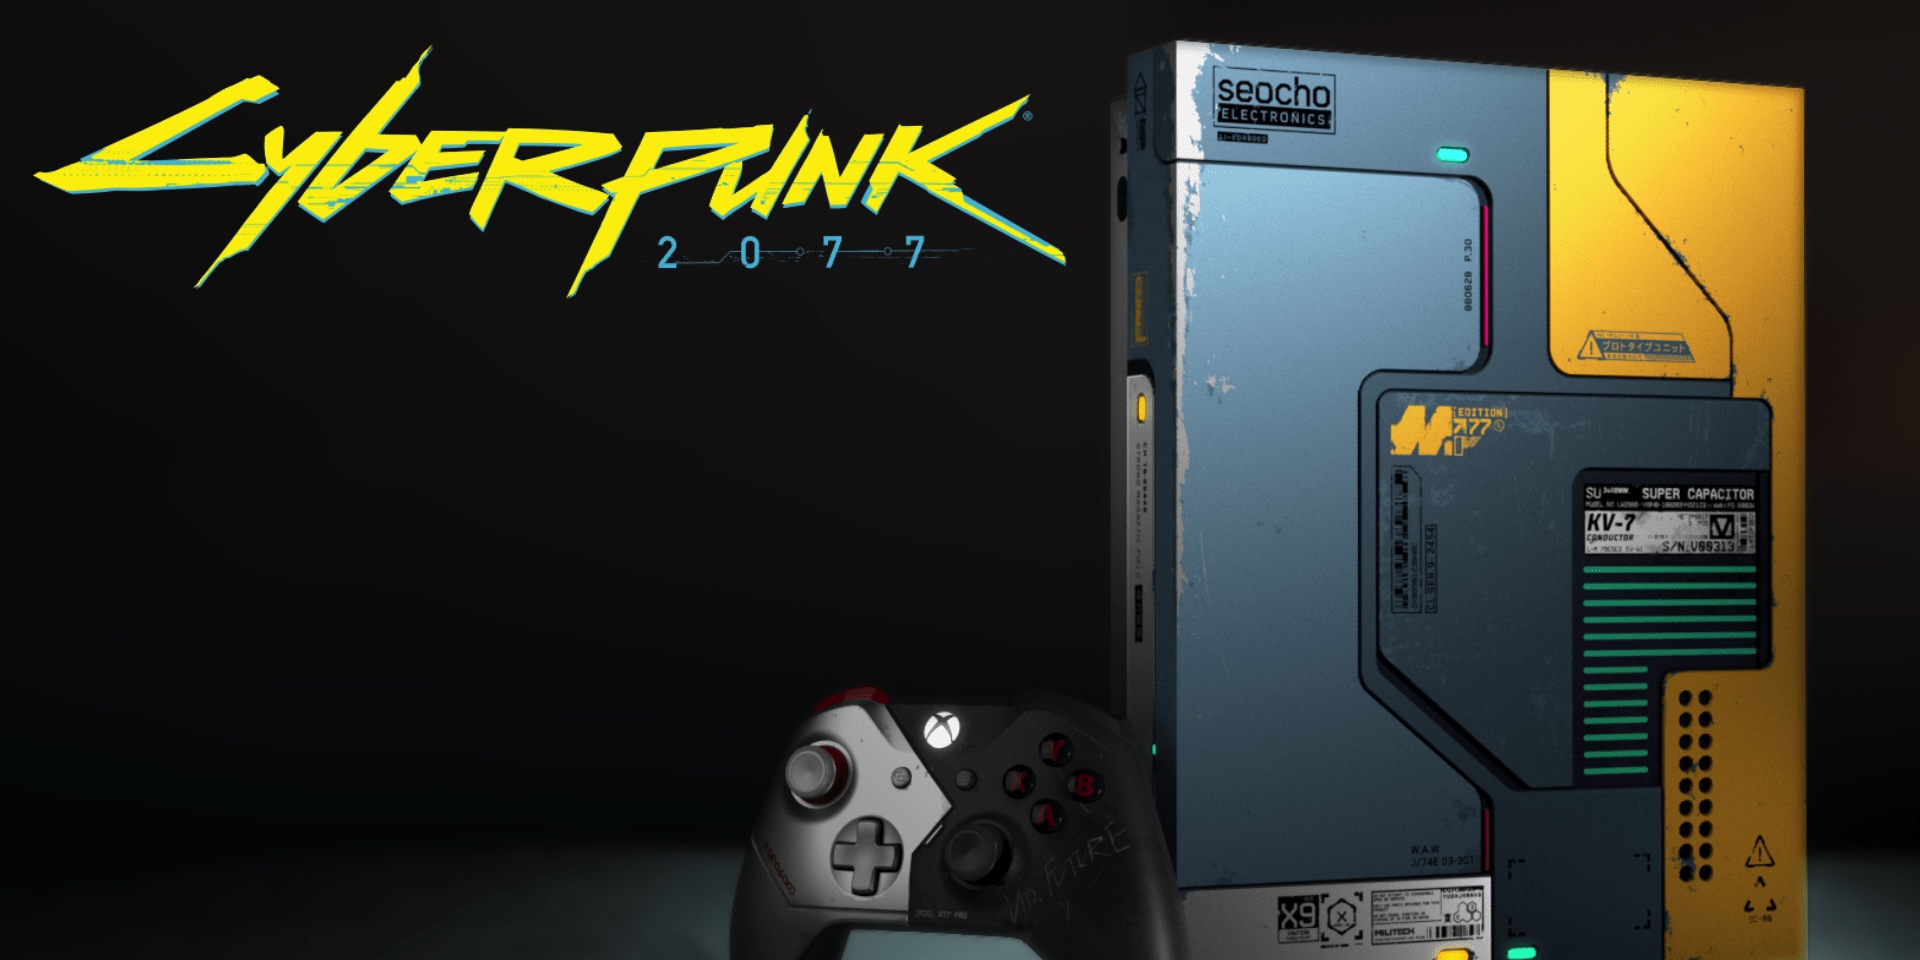 cyberpunk 2077 xbox console pre order